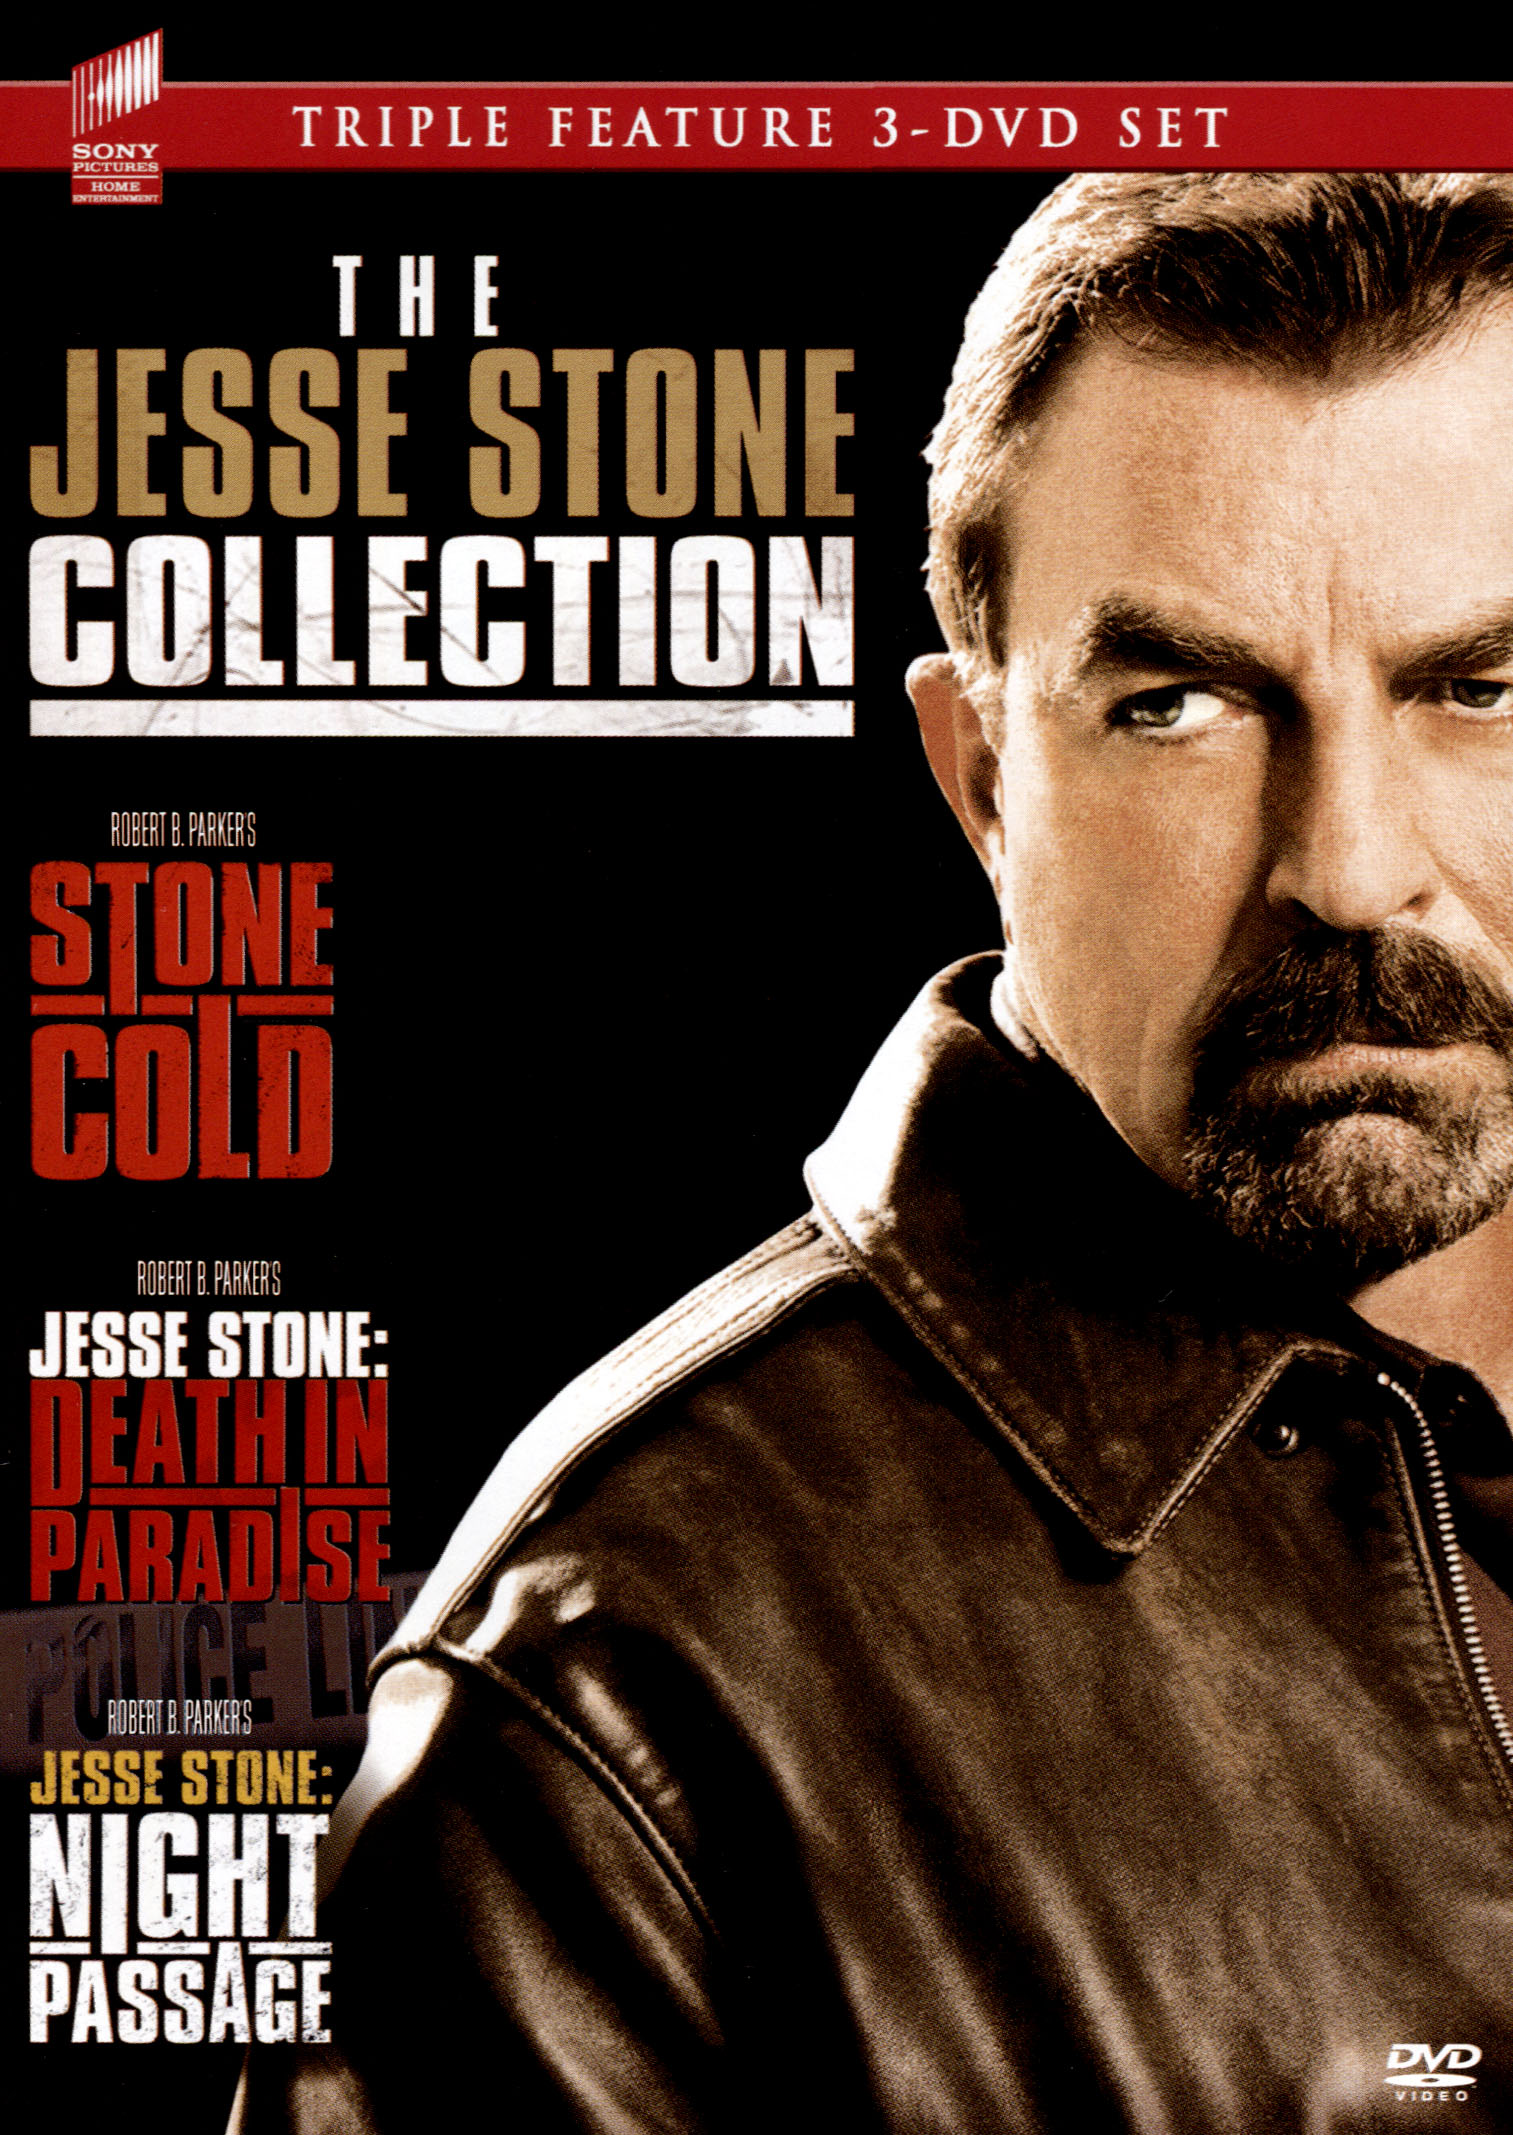  Jesse Stone Movies